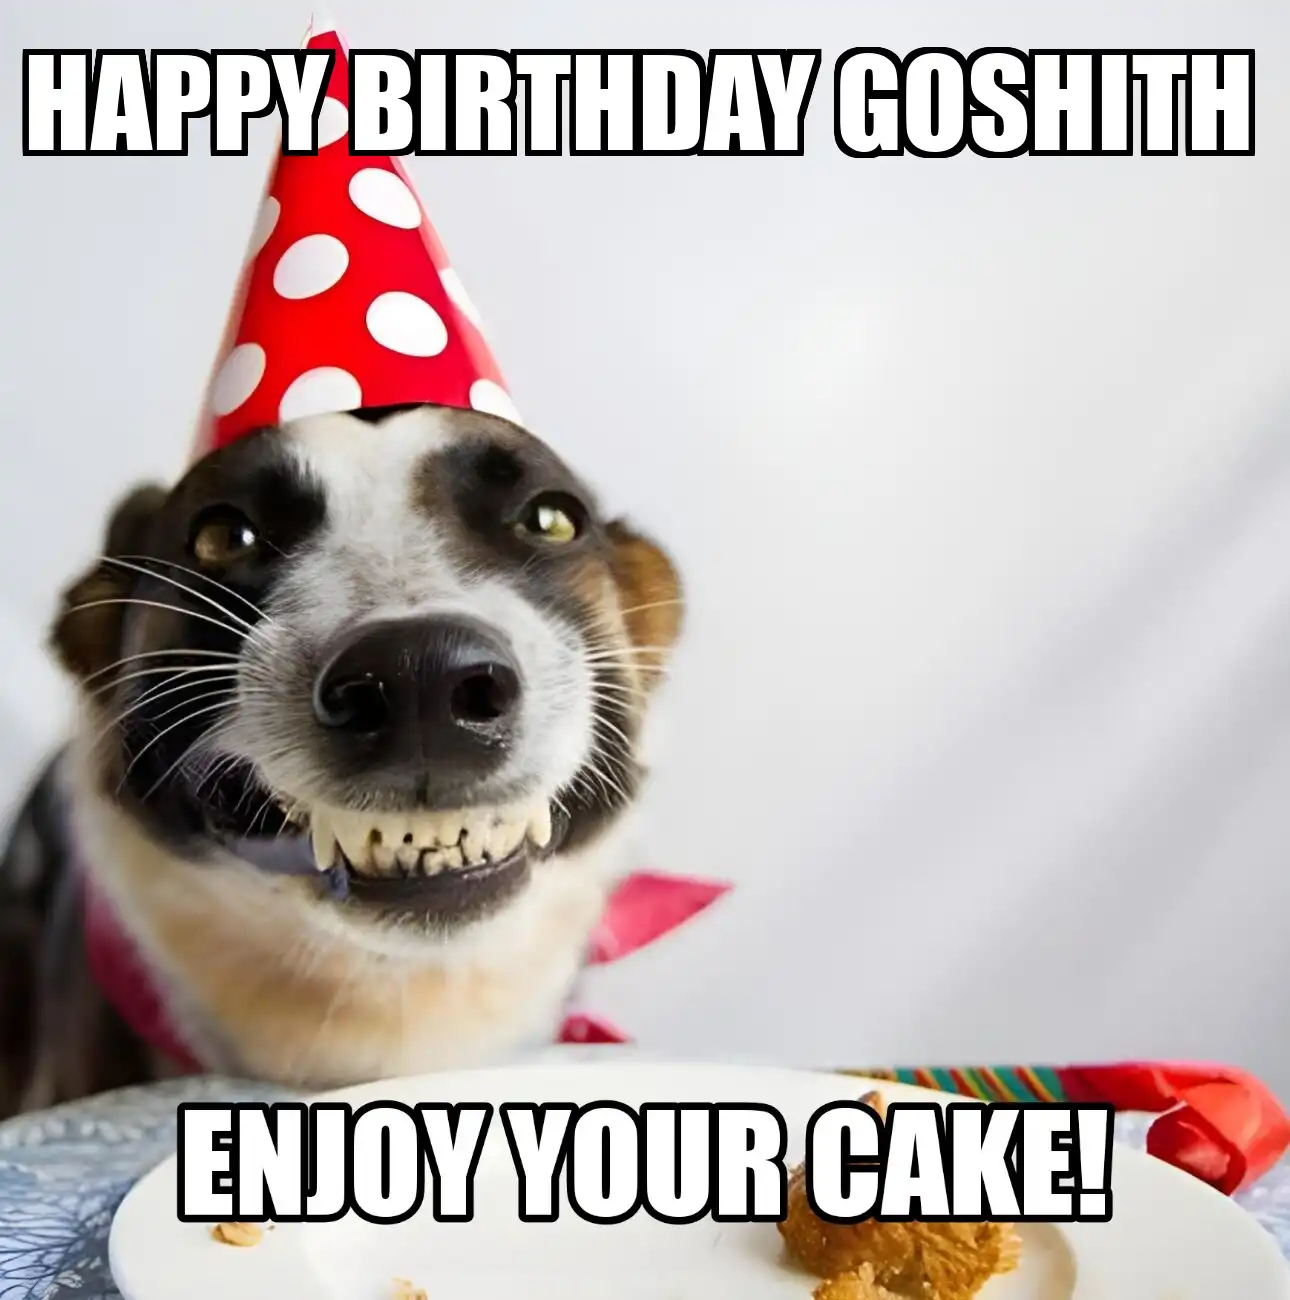 Happy Birthday Goshith Enjoy Your Cake Dog Meme